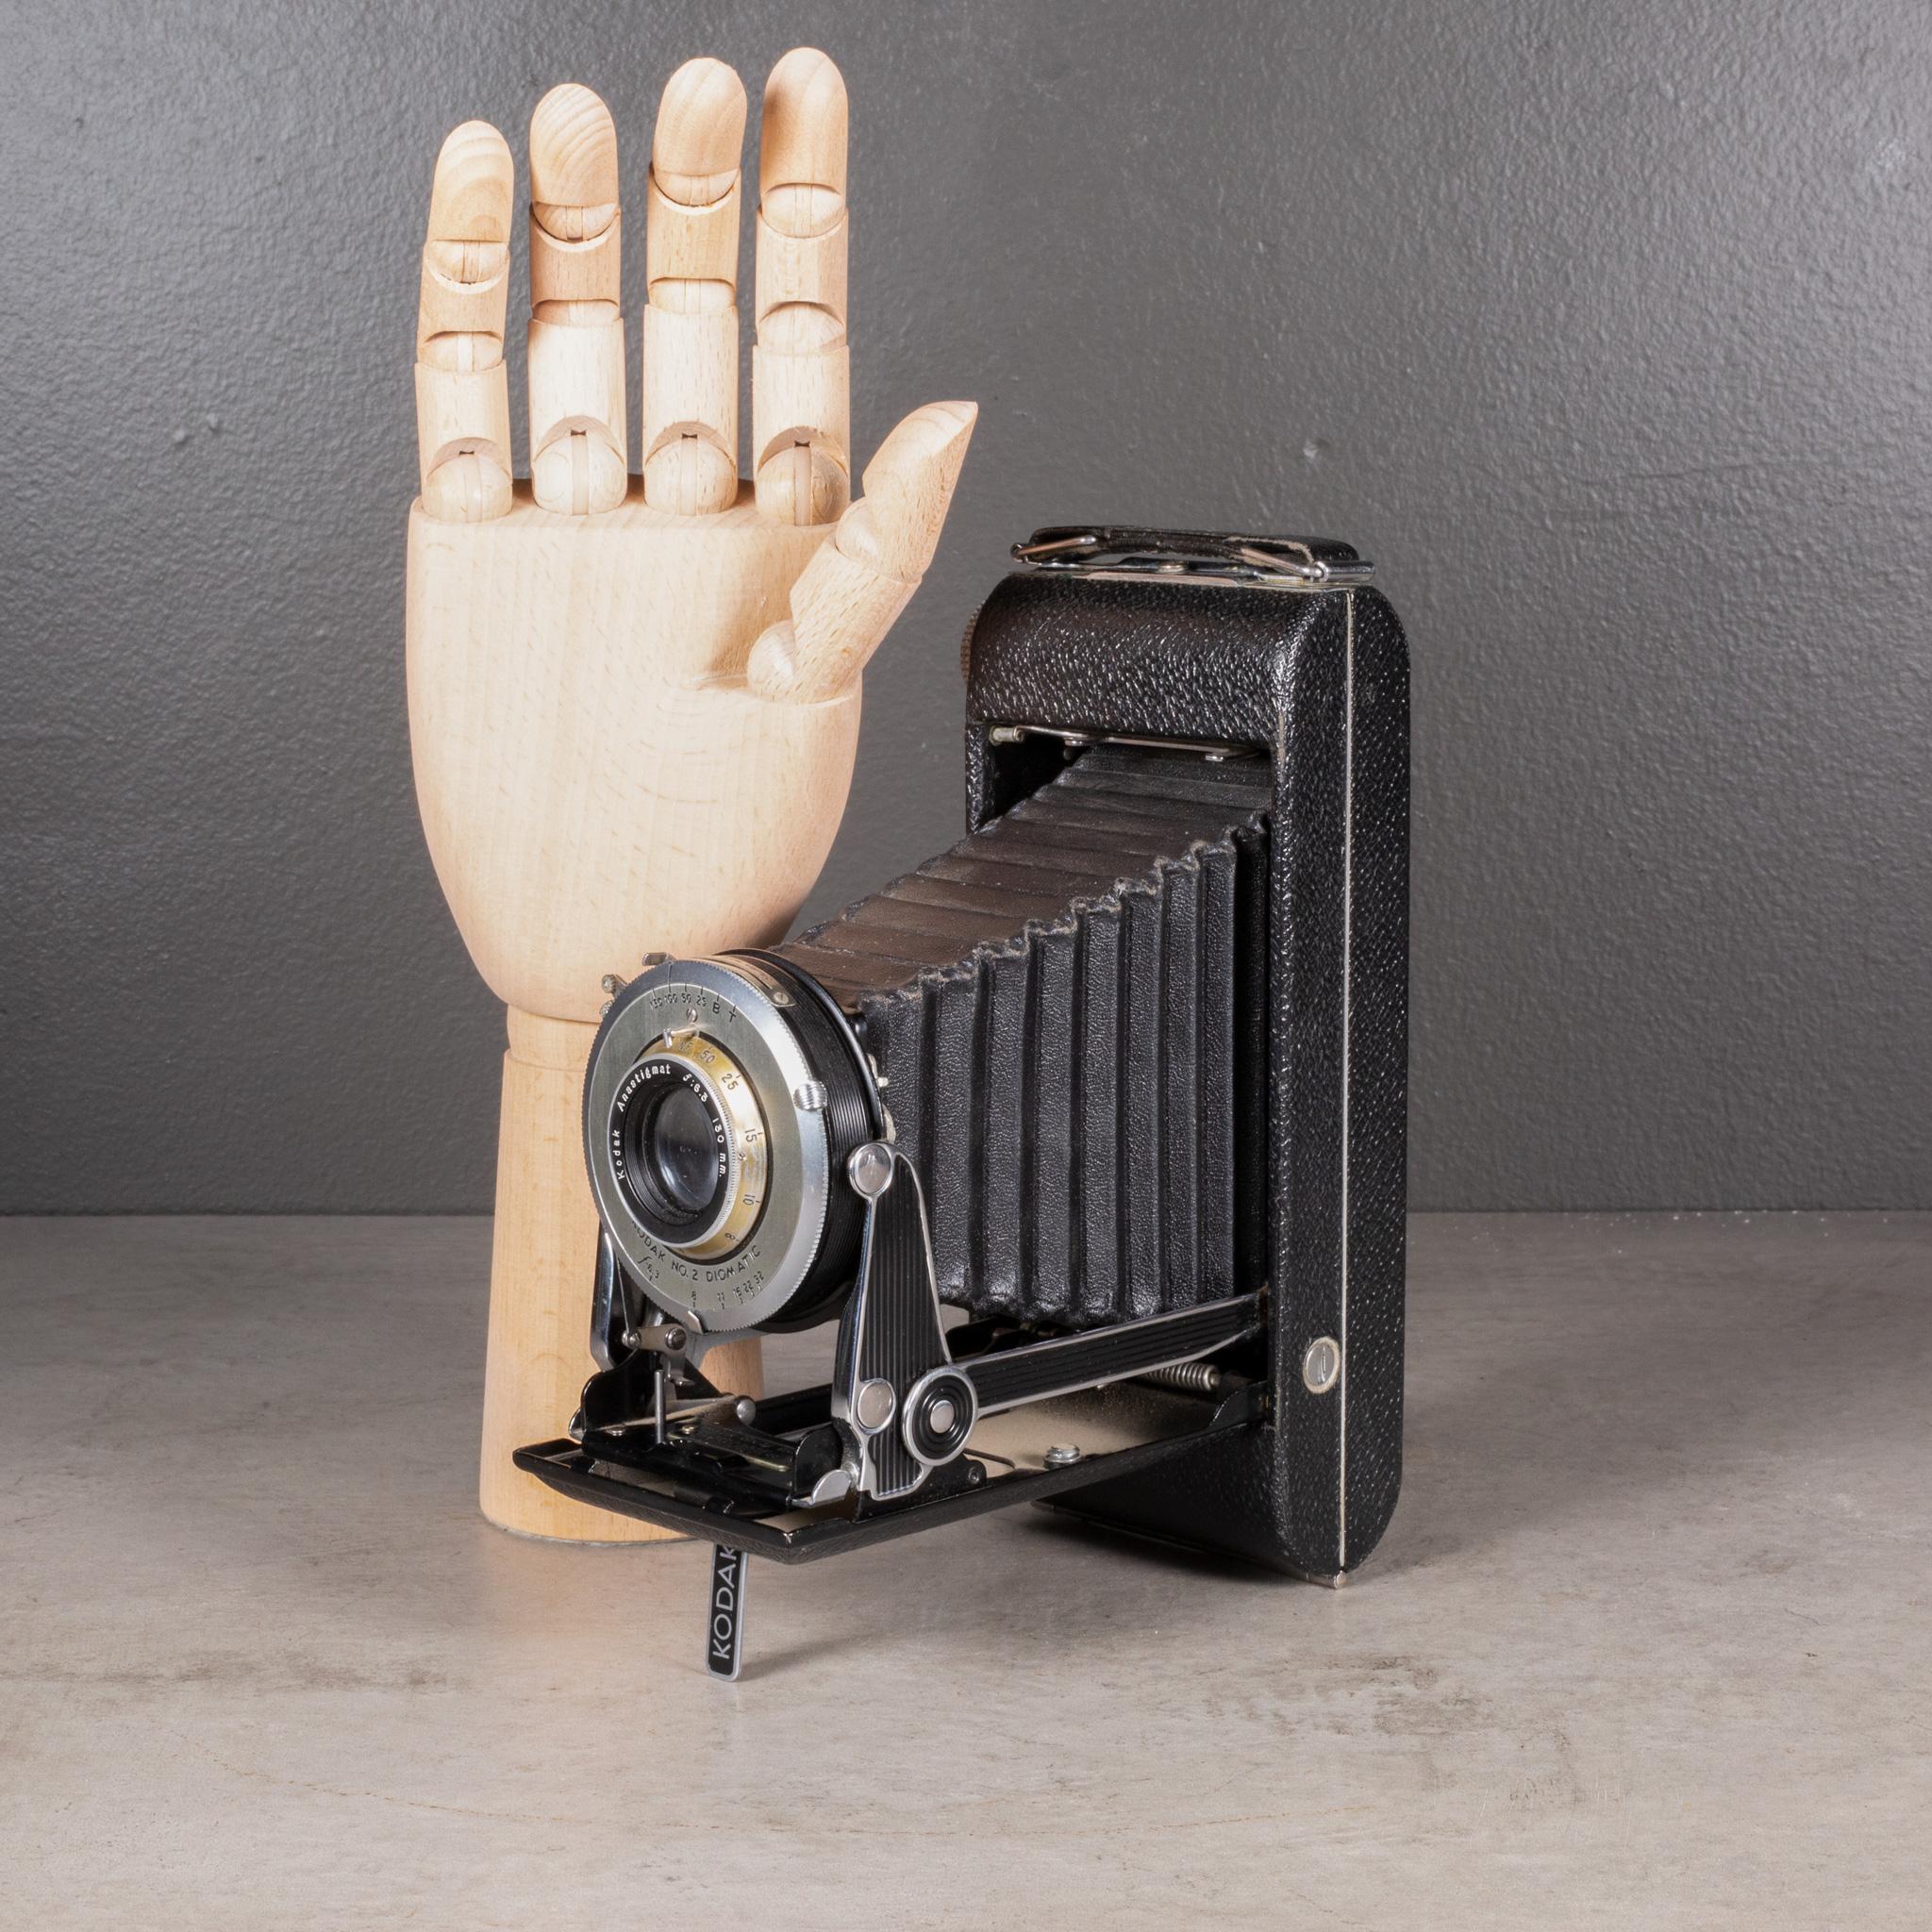 À PROPOS DE

Appareil photo pliant Kodak Senior Six-16 de style Art déco, avec un boîtier enveloppé de cuir, des accents chromés et noirs et un viseur escamotable.

Représenté avec une main grandeur nature. Vendu uniquement à titre décoratif. Peut